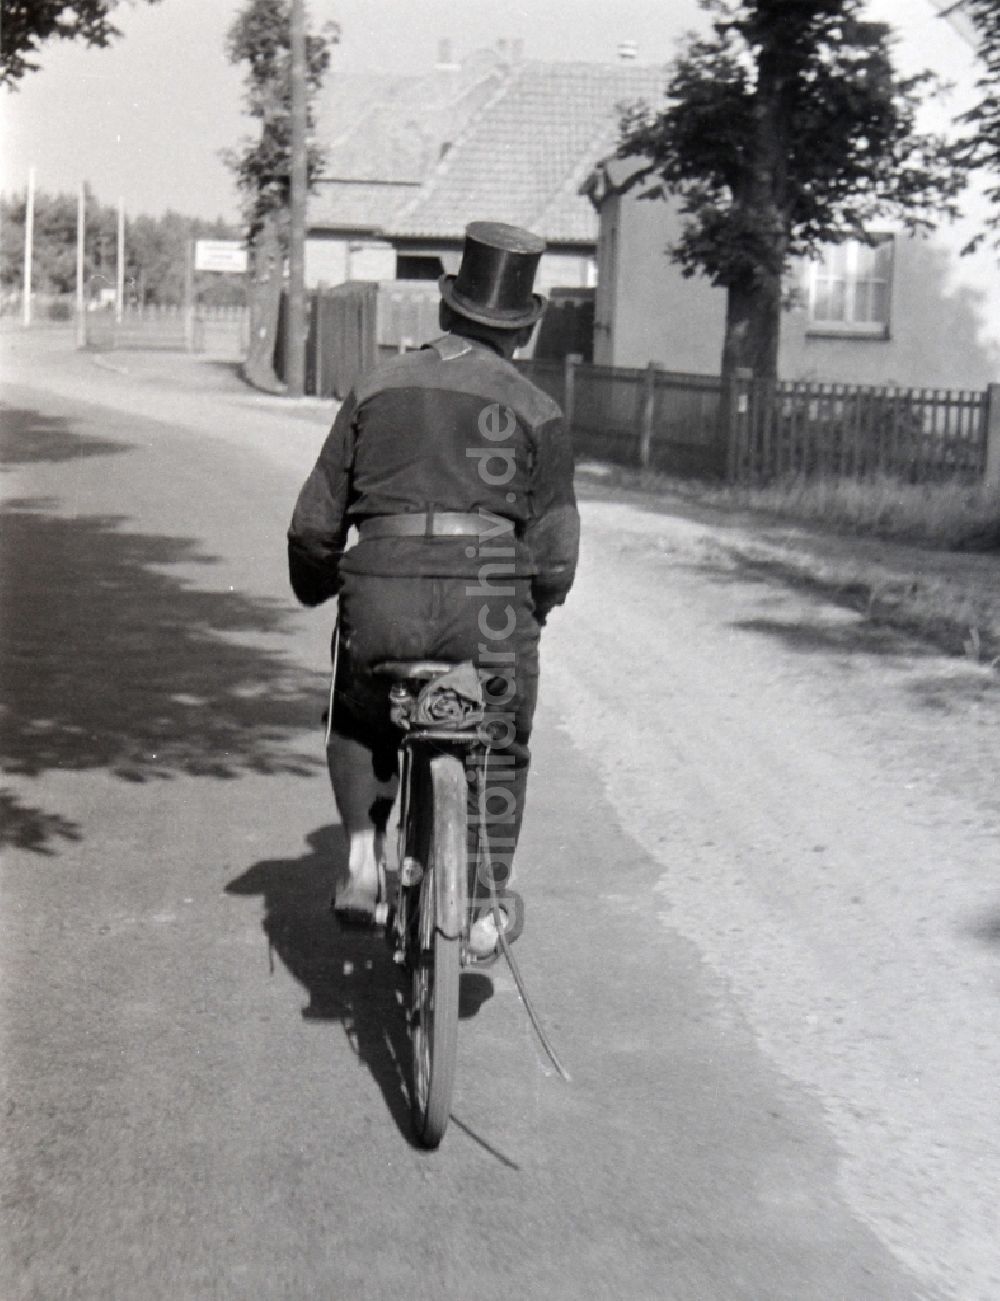 DDR-Fotoarchiv: Prerow - Schornsteinfeger bei der Arbeit auf einem Fahrrad in Prerow in Mecklenburg-Vorpommern in der DDR